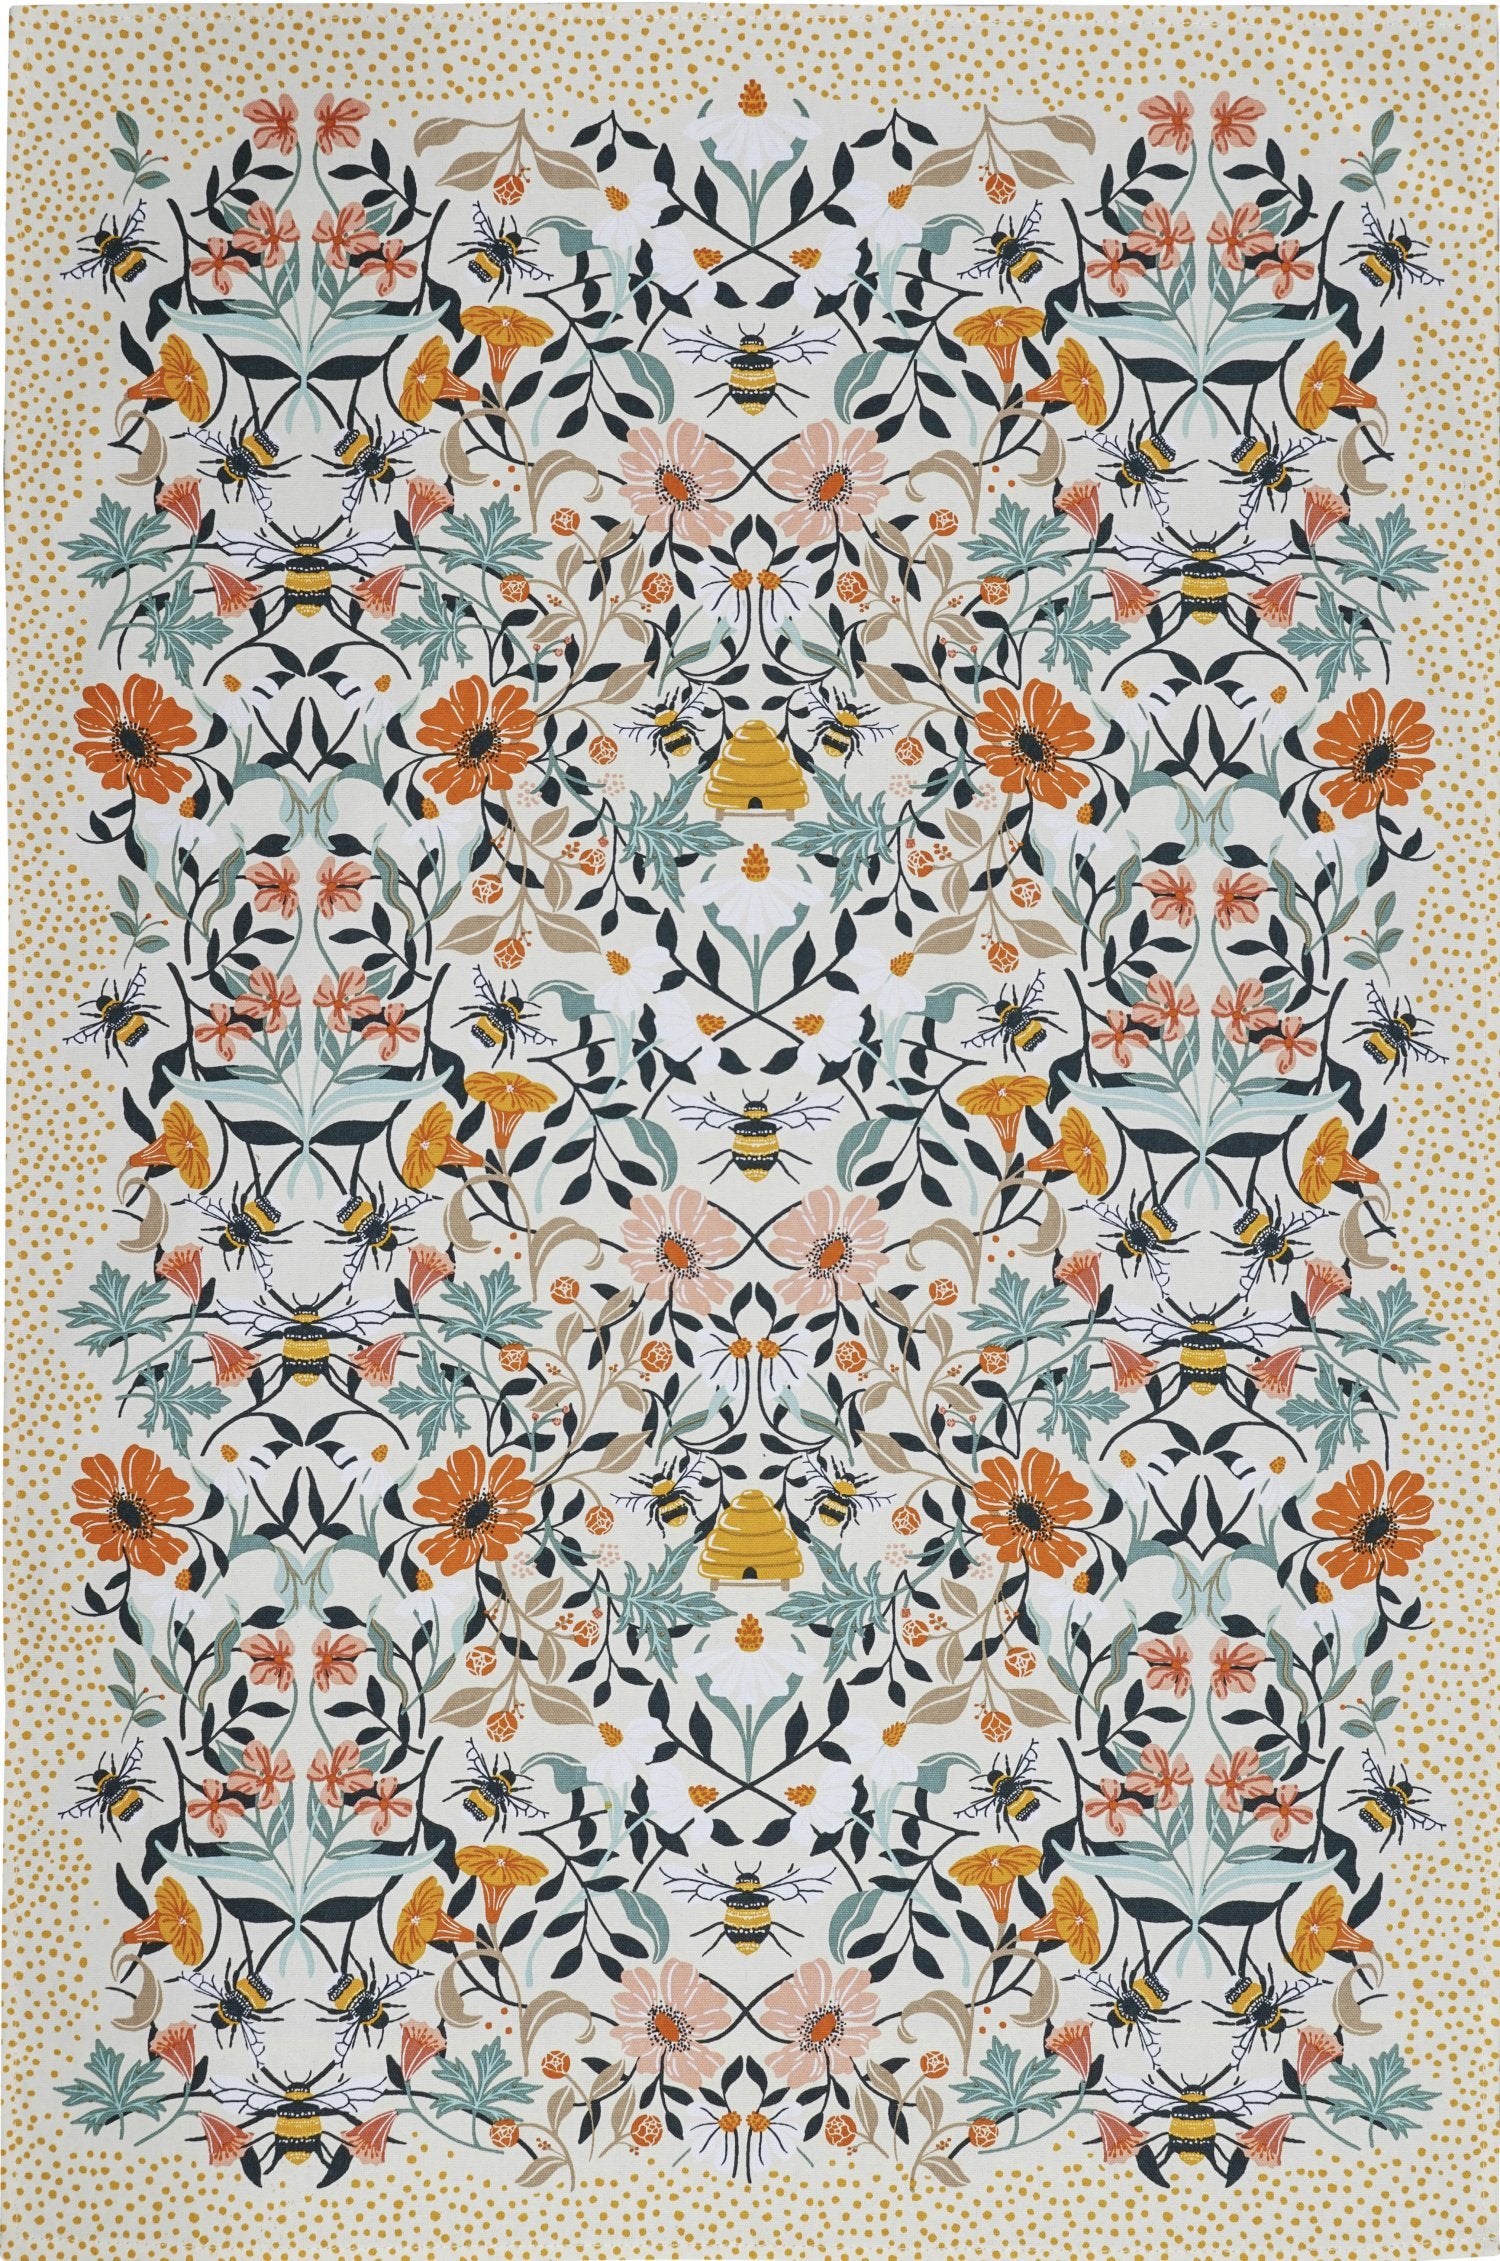 Ulster Weavers, "Bee Bloom", Printed  cotton tea towel.